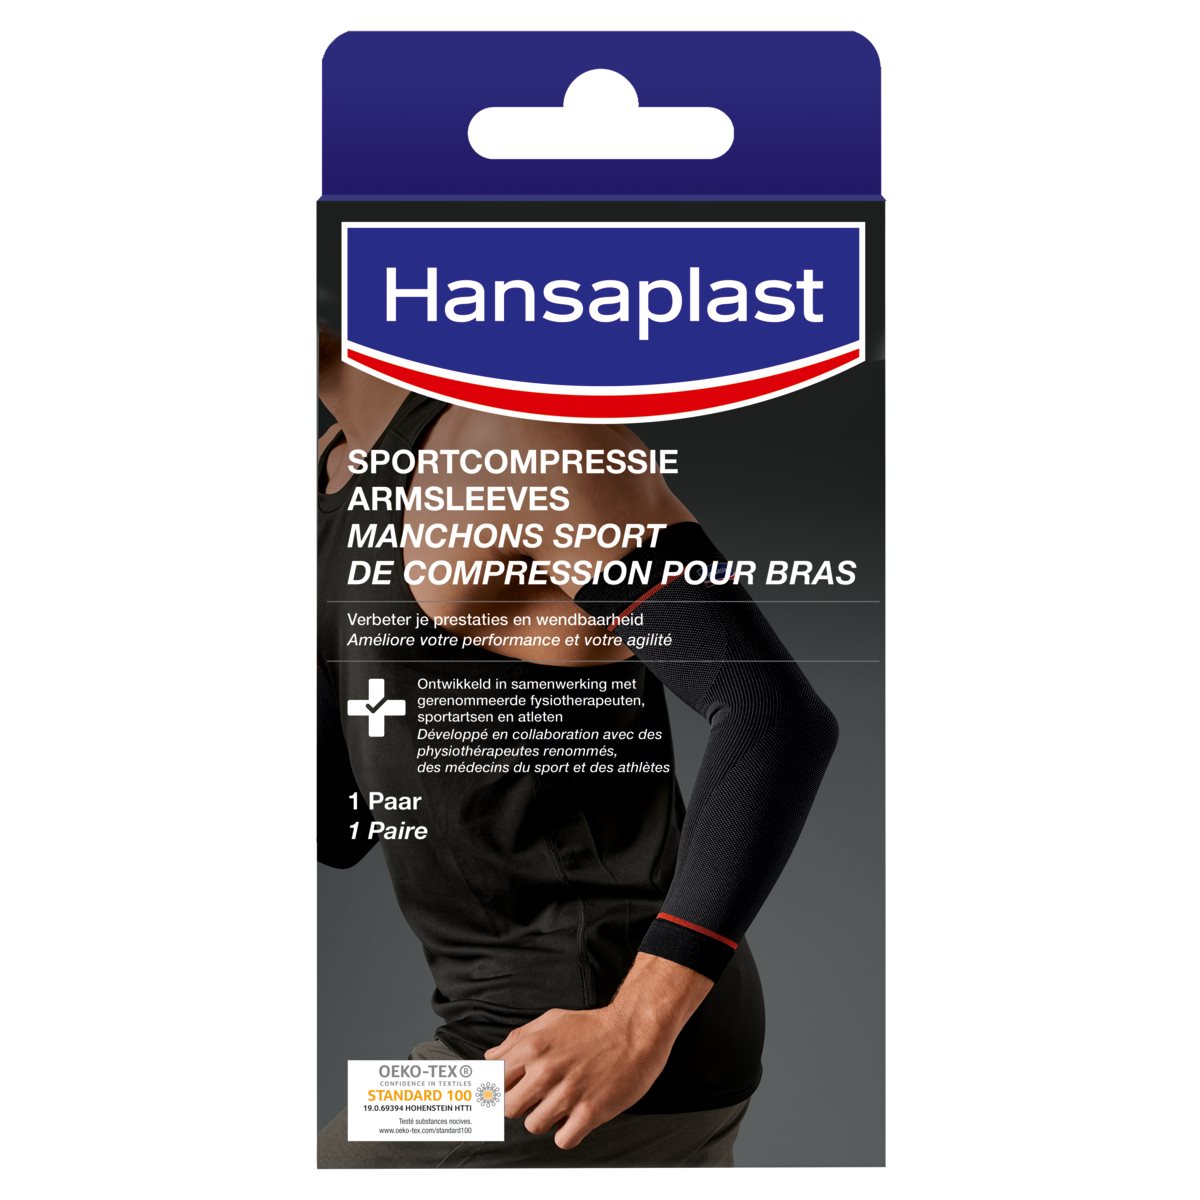 Sportcompressie armsleeves - Hansaplast